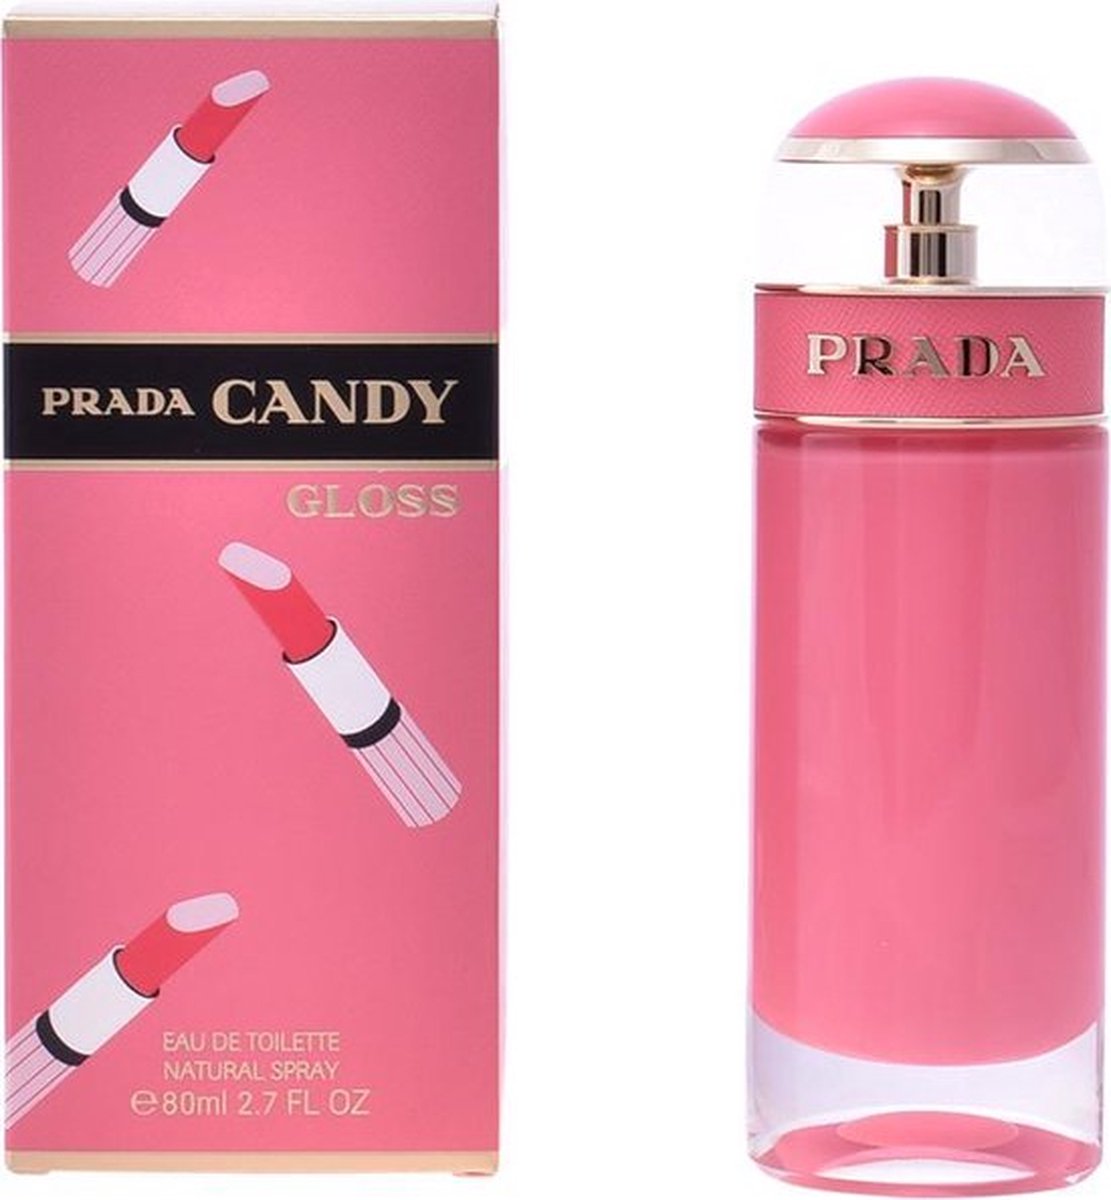 Prada Candy - Gloss - Eau de Toilette - spray 80 ml - damesparfum - Moederdag Cadeau Tip!